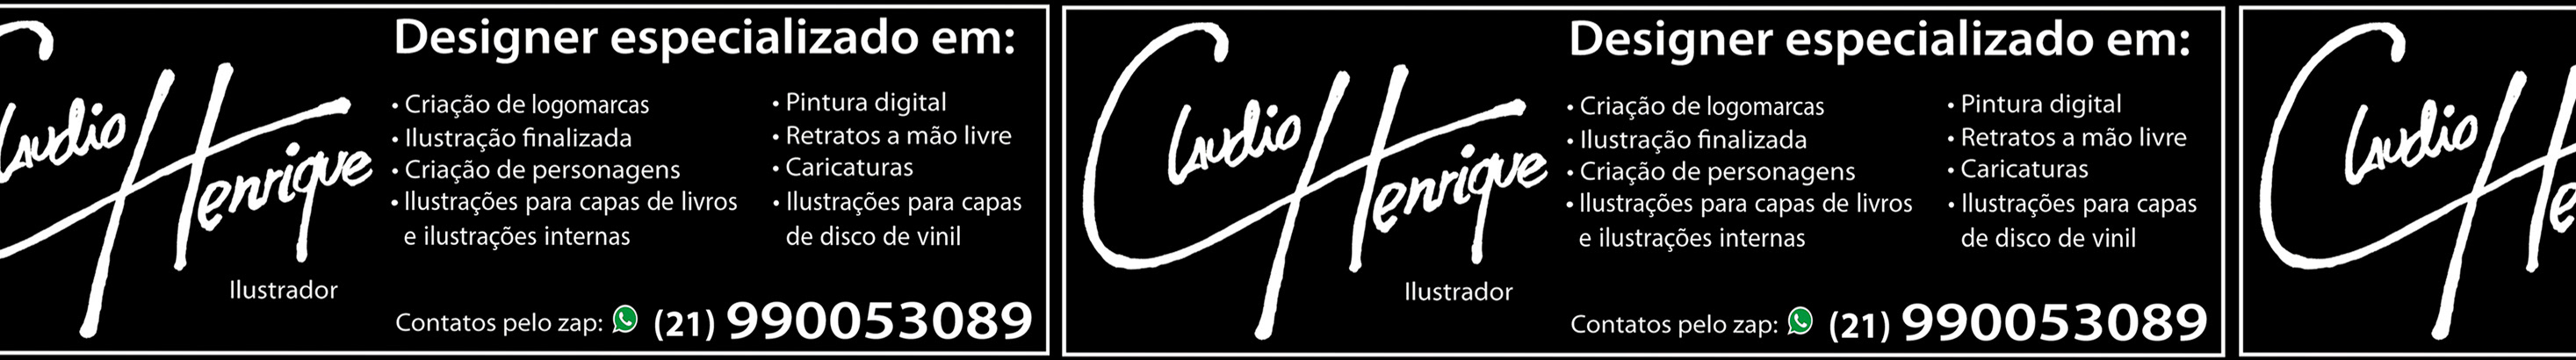 CLAUDIO HENRIQUE ILUSTRADOR's profile banner